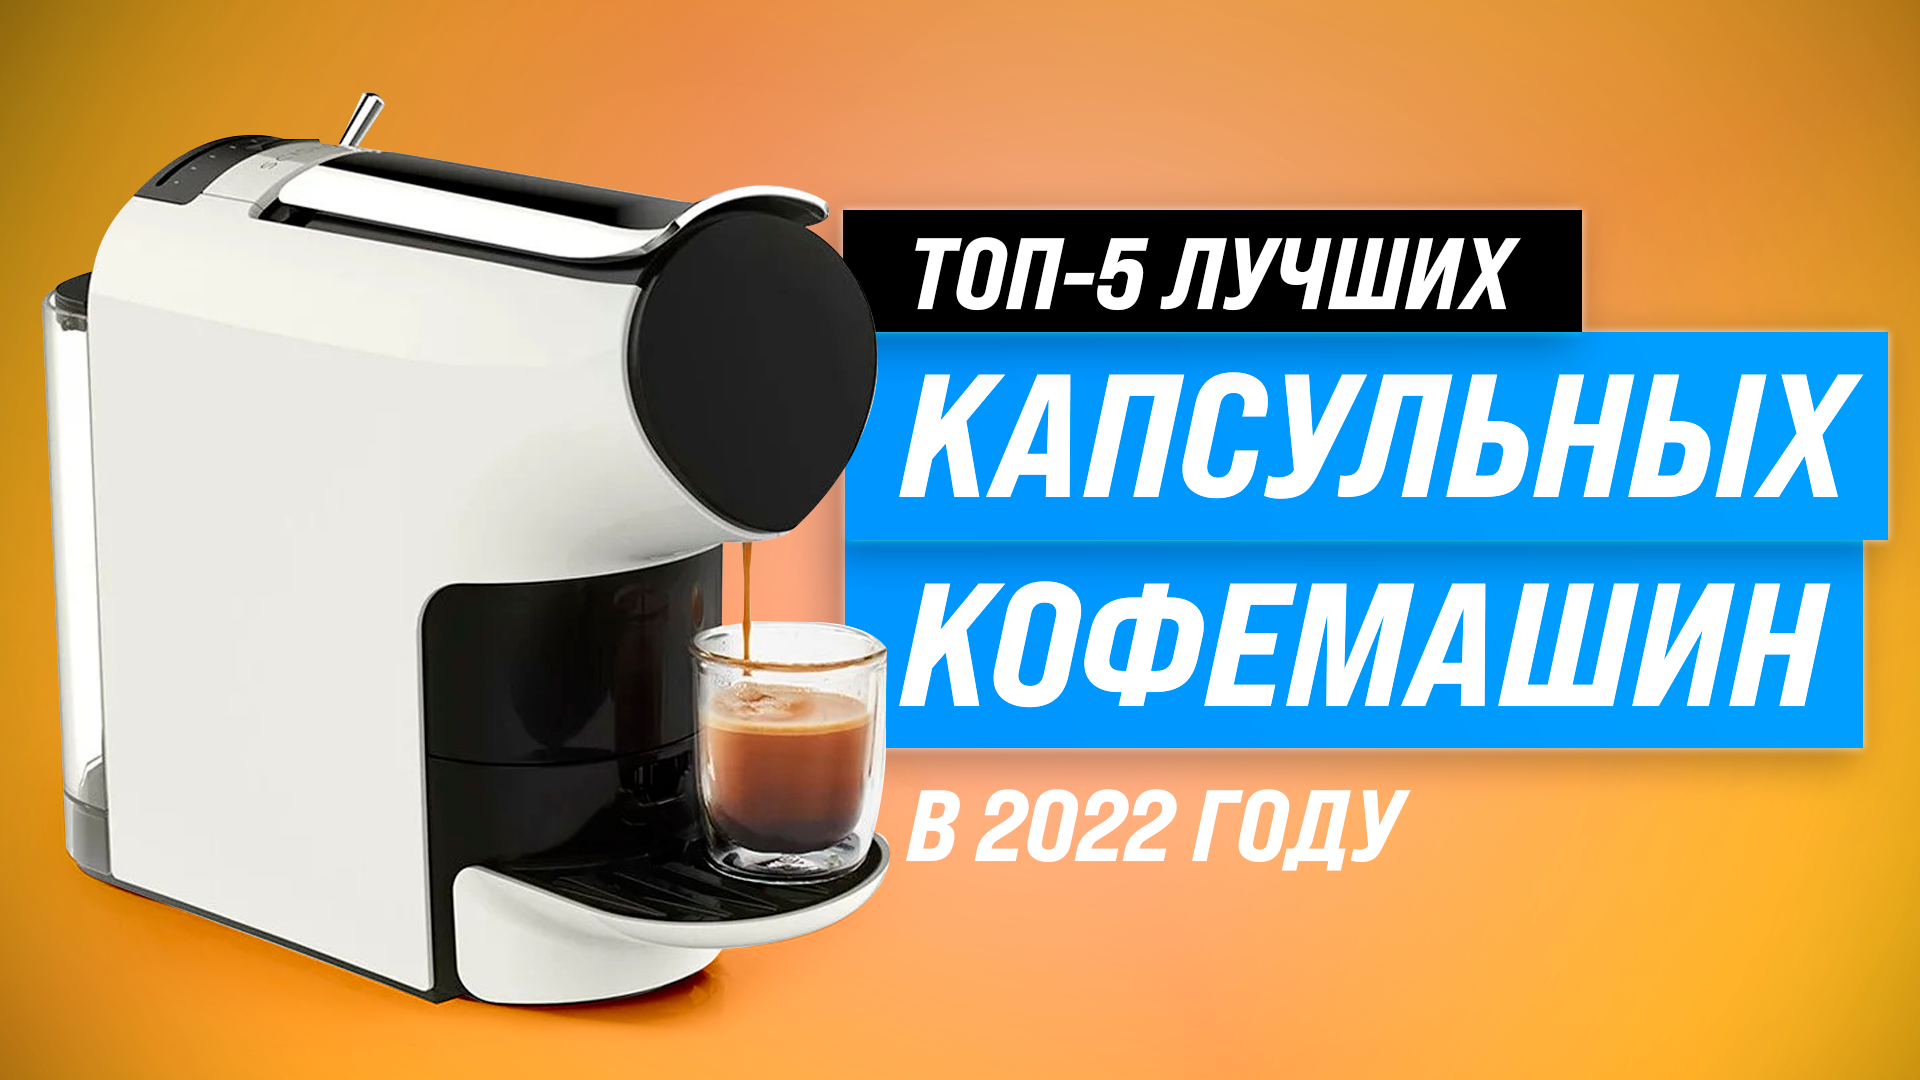 Топ 10 лучших кофеварок и кофемашин до 5000 рублей по отзывам покупателей